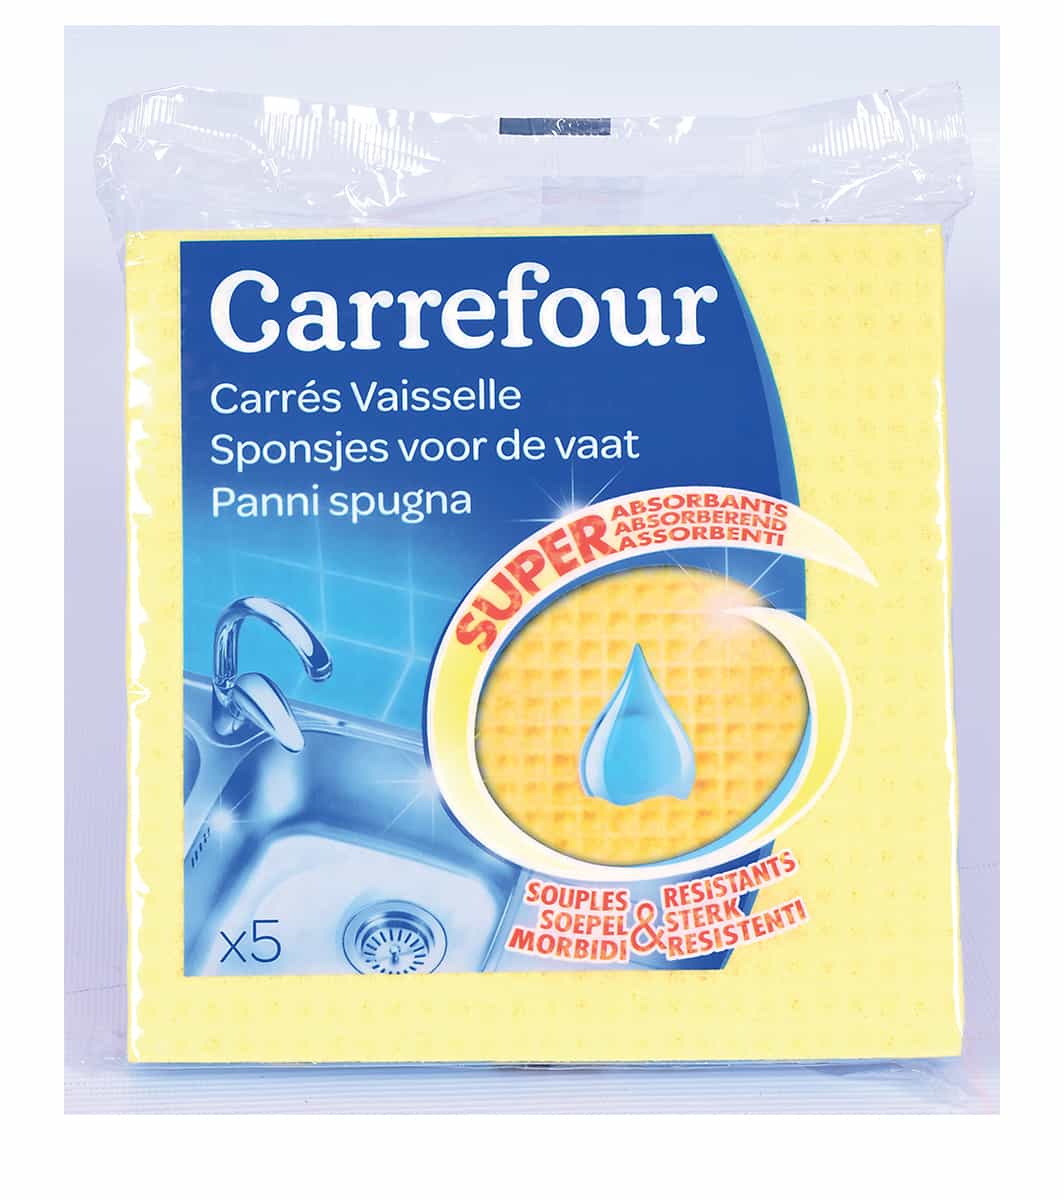 Eponges carrés vaisselle 5 unités - Carrefour Maroc